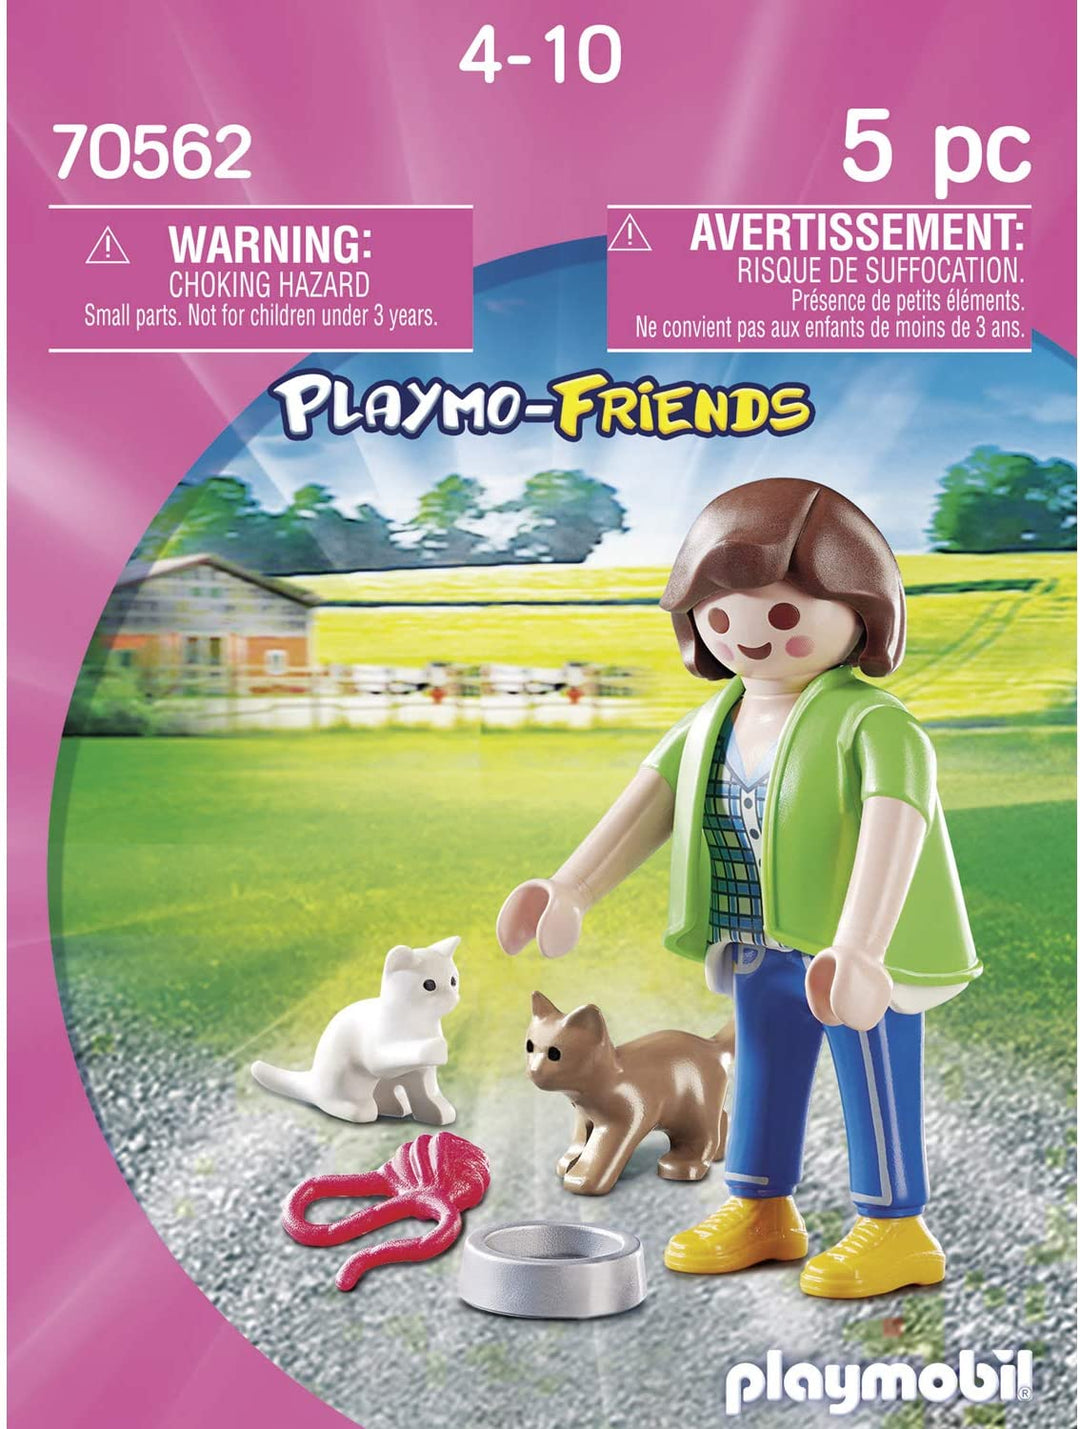 Playmobil 70562 Playmo-Friends Boy con coche RC, para niños a partir de 4 años